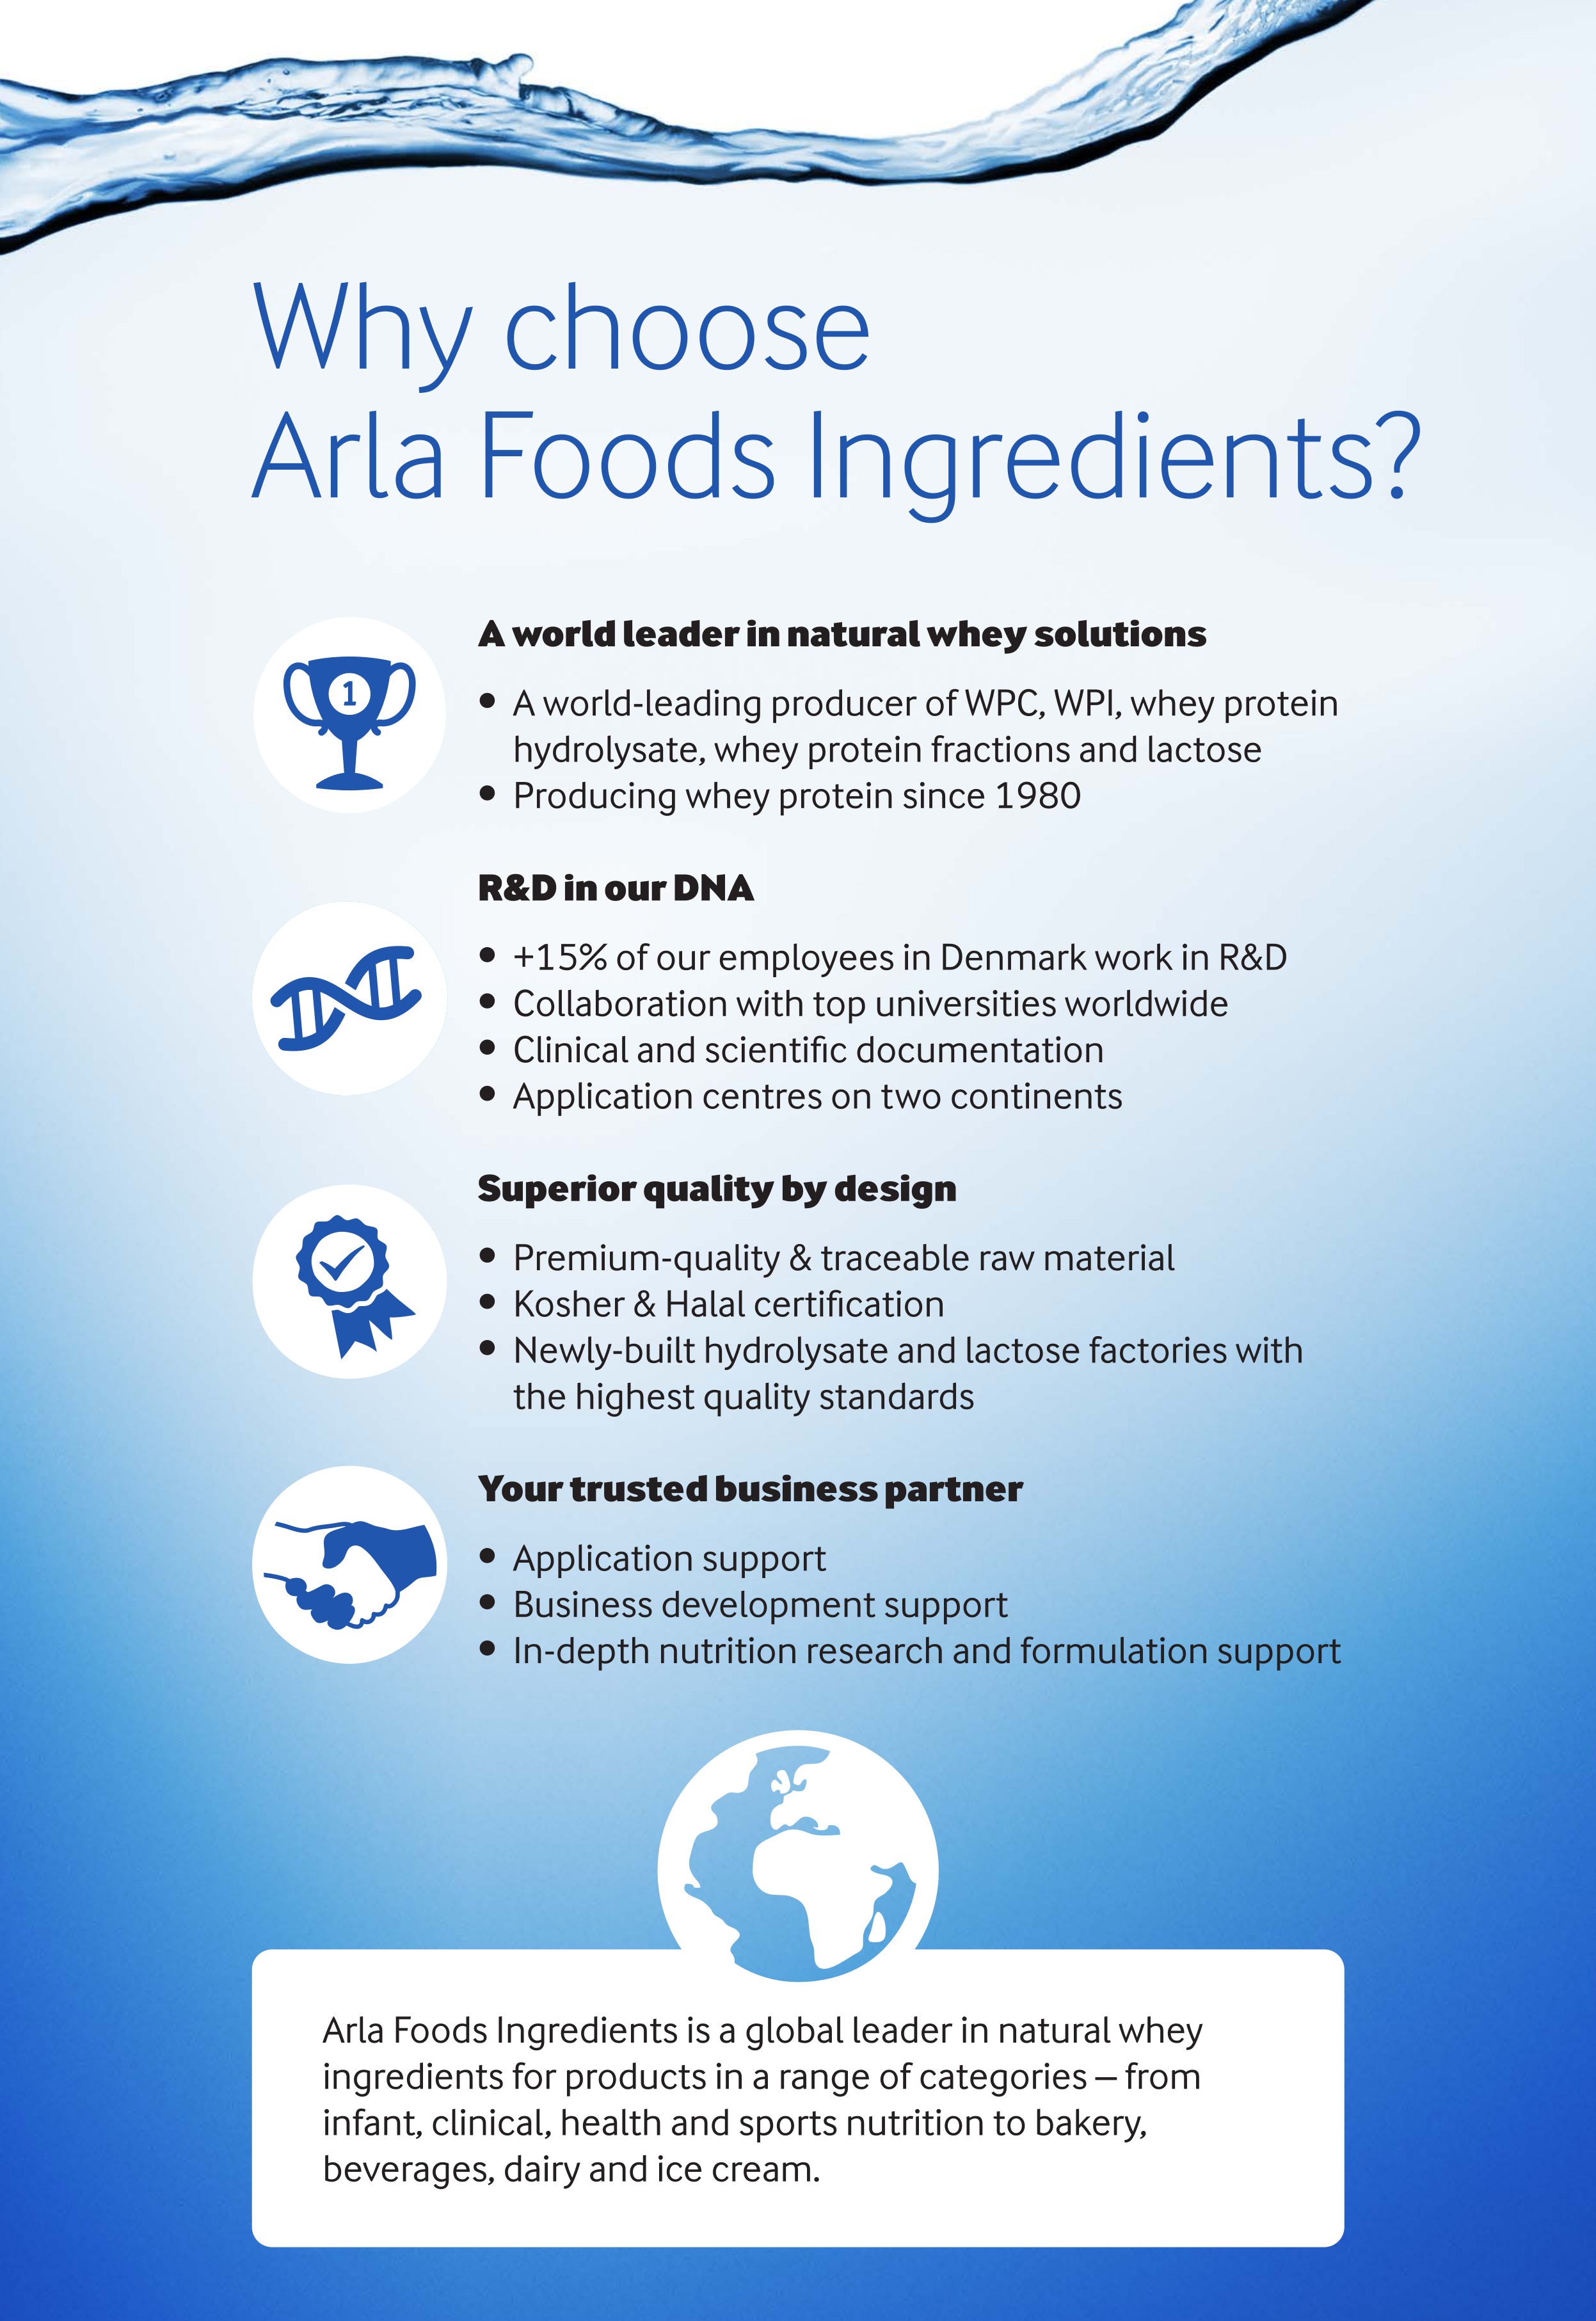 Why Choose Arla Foods Ingredients